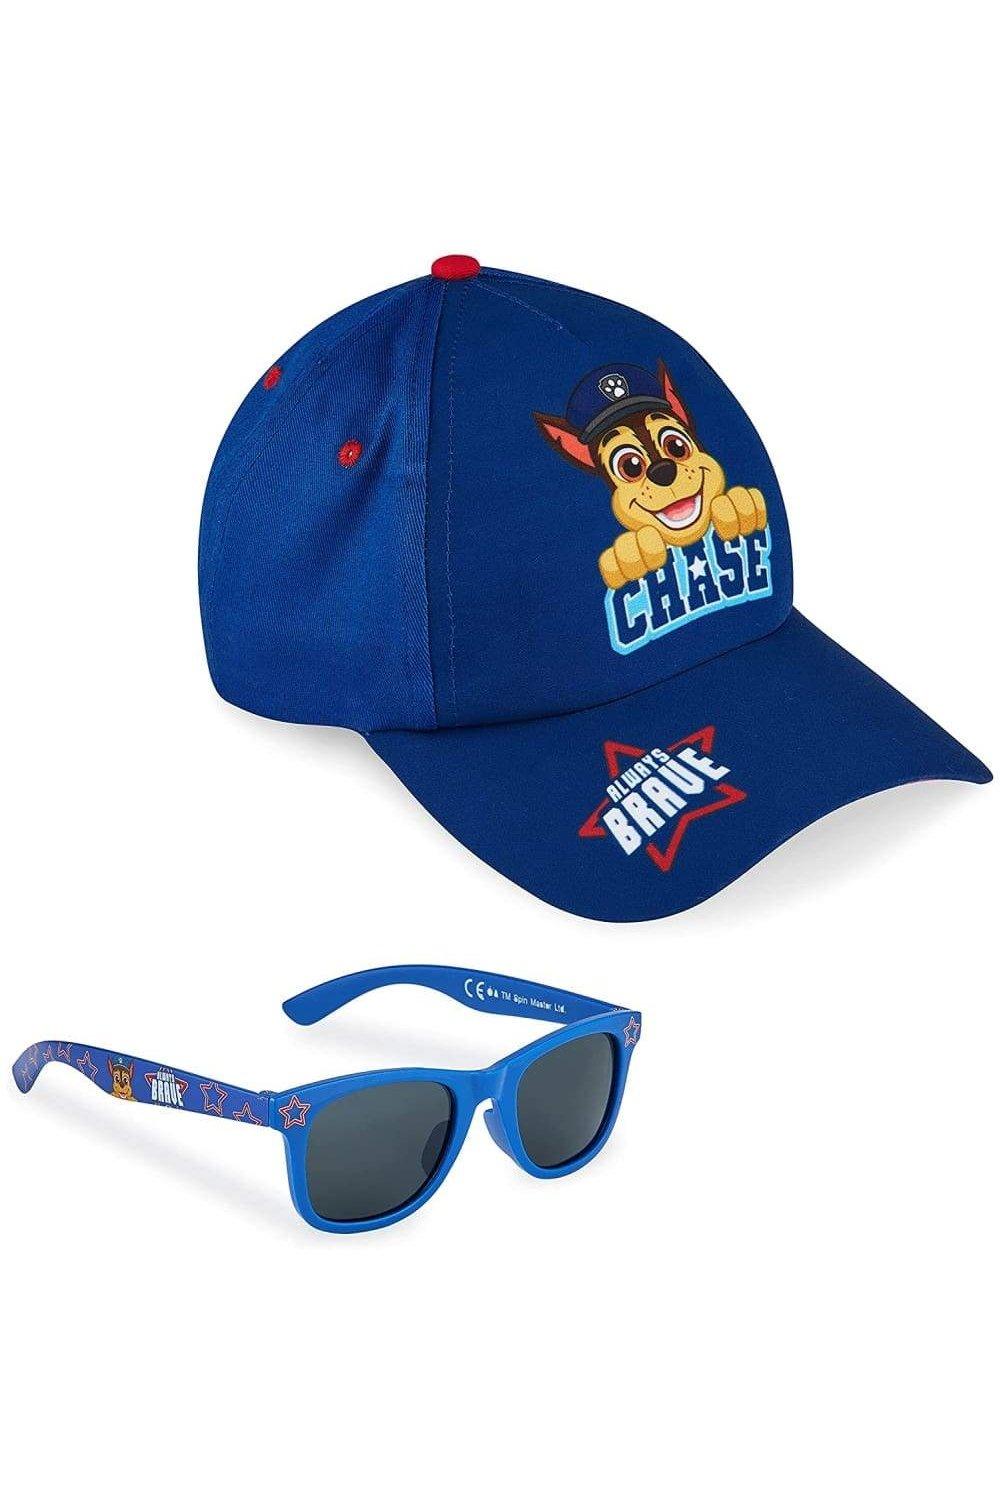 детские солнцезащитные очки диснеевская принцесса ариель Бейсболка и солнцезащитные очки Chase Paw Patrol, синий